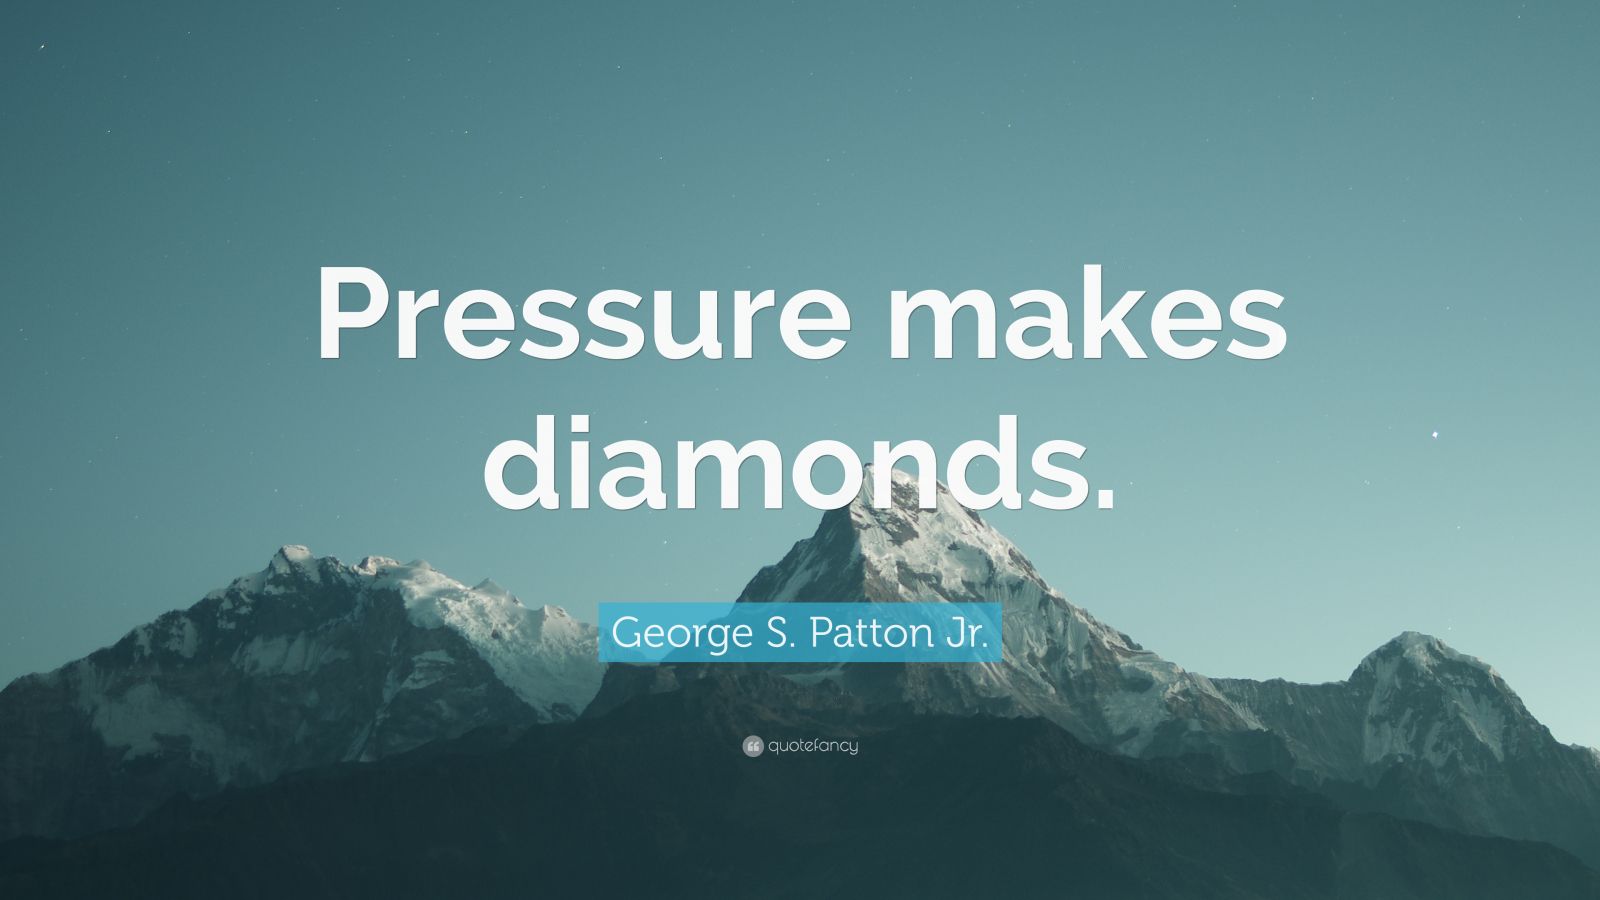 4678947 George S Patton Jr Quote Pressure makes diamonds